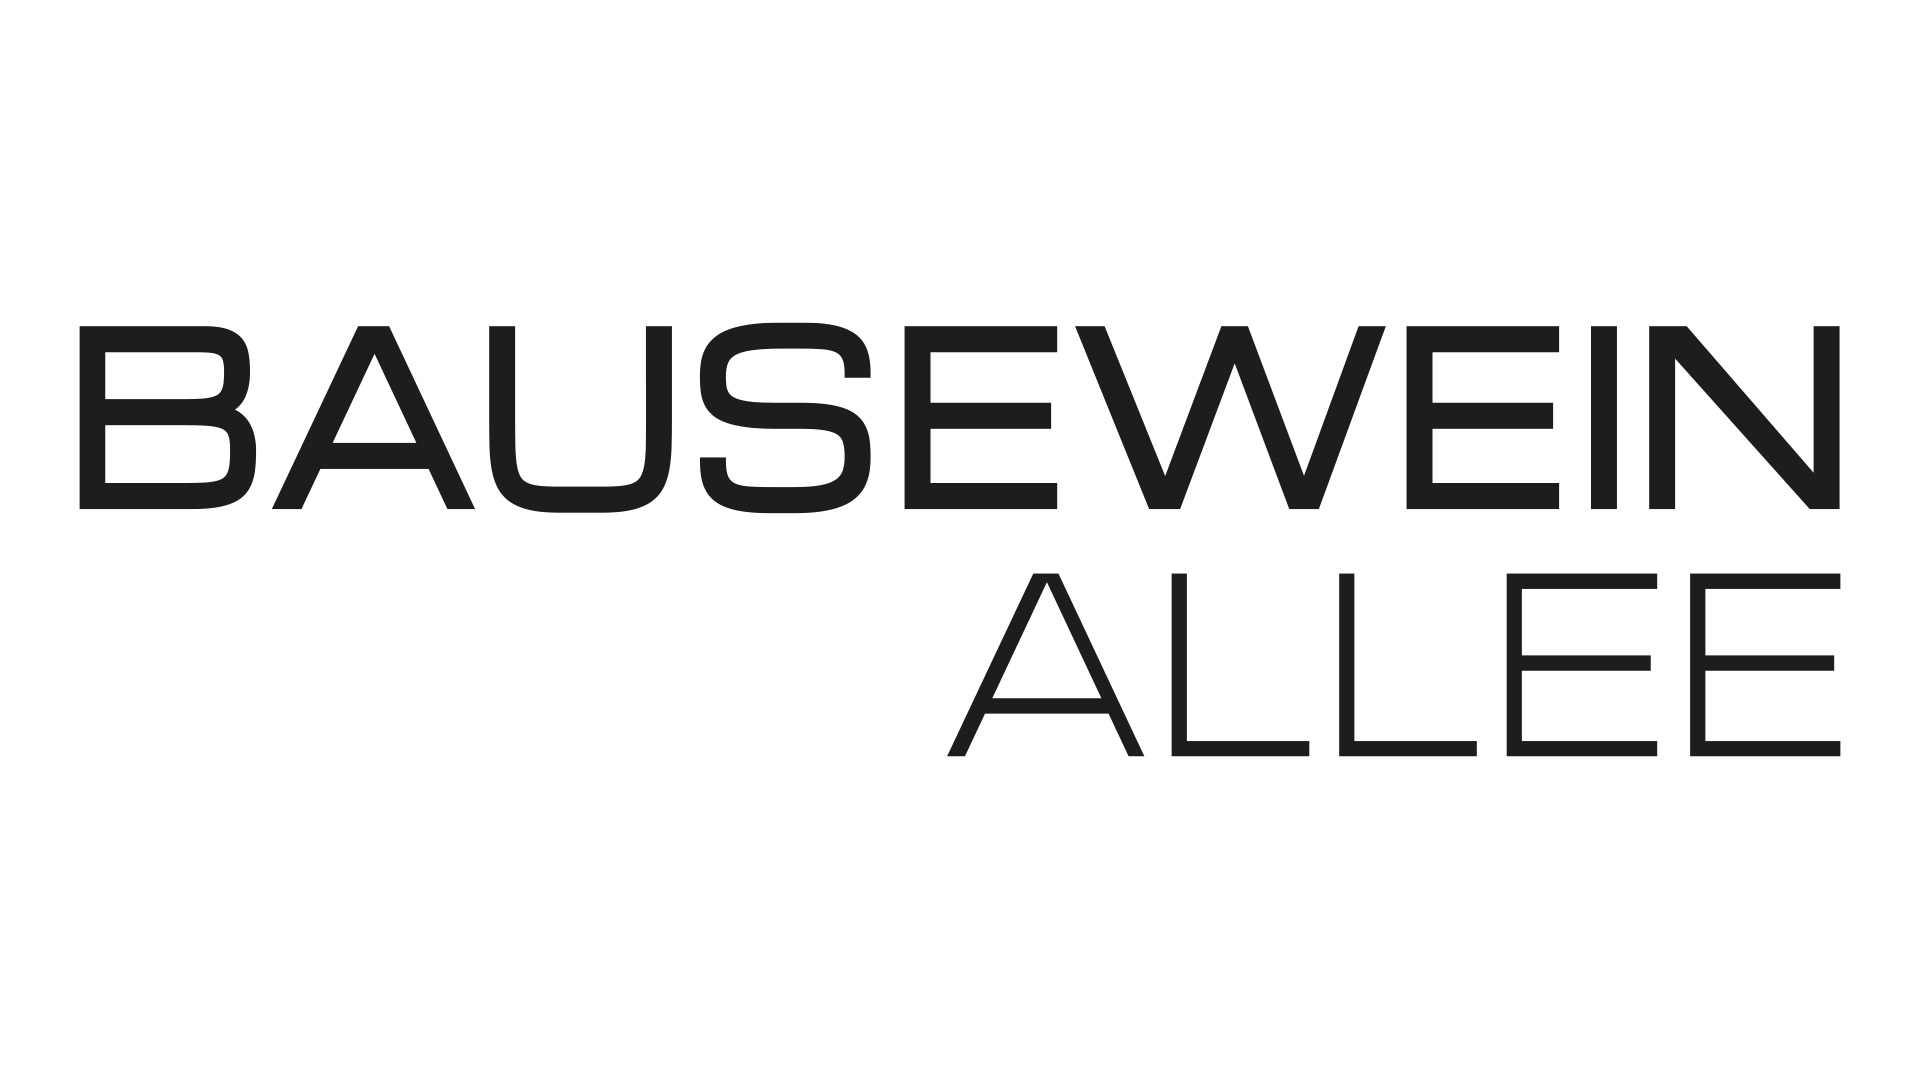 Bausewein Allee logo